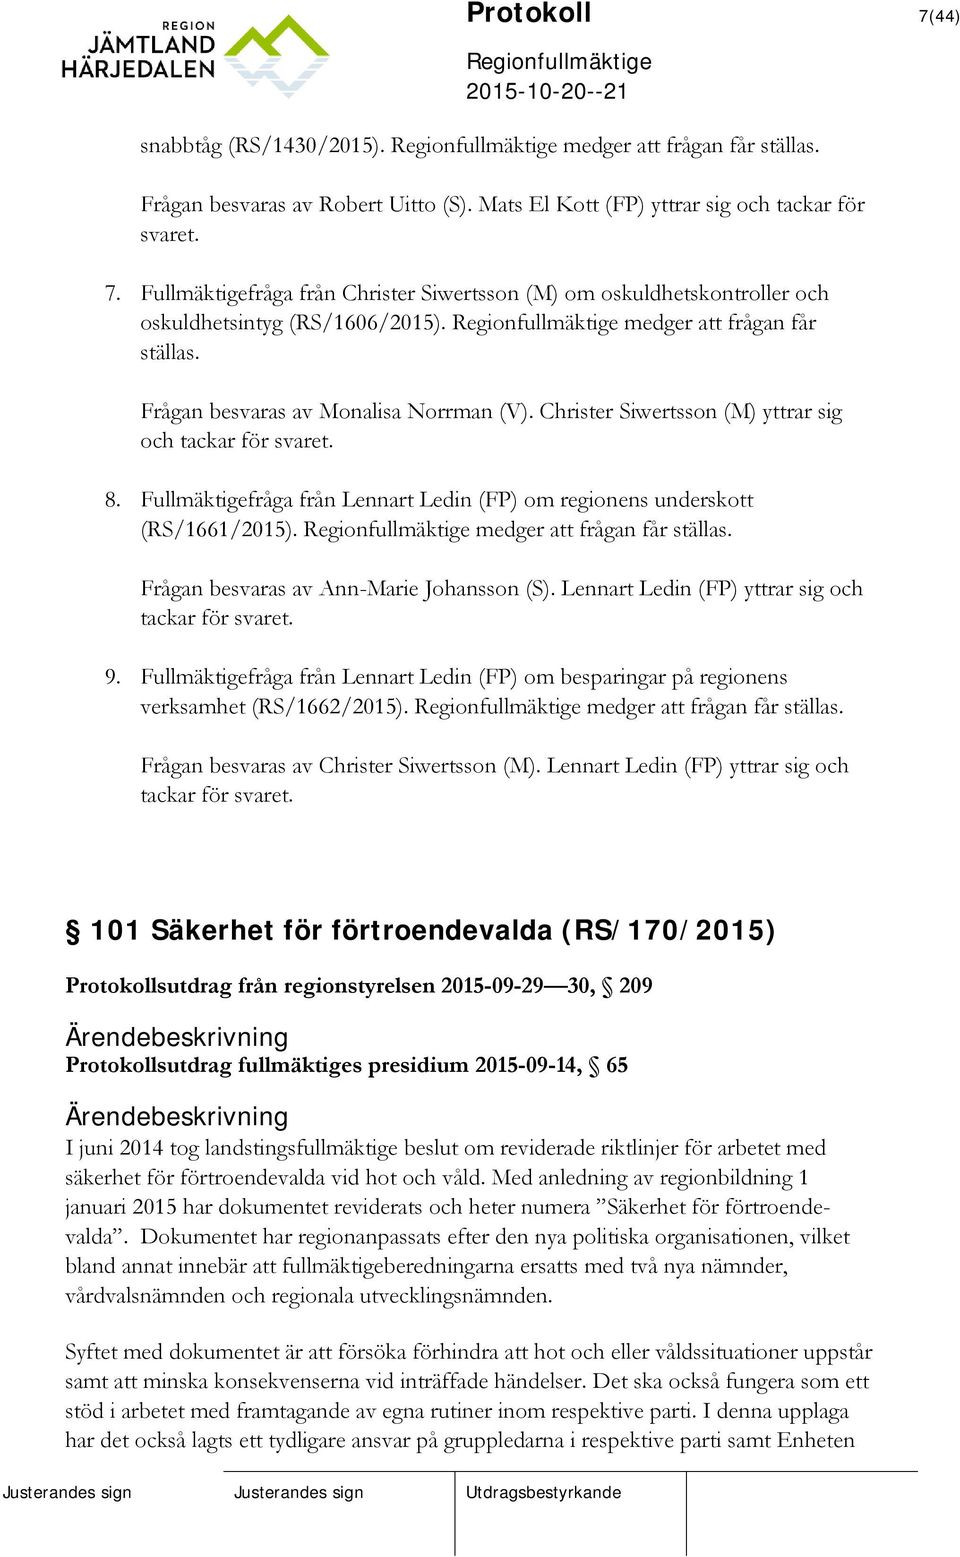 Fullmäktigefråga från Lennart Ledin (FP) om regionens underskott (RS/1661/2015). medger att frågan får ställas. Frågan besvaras av Ann-Marie Johansson (S).